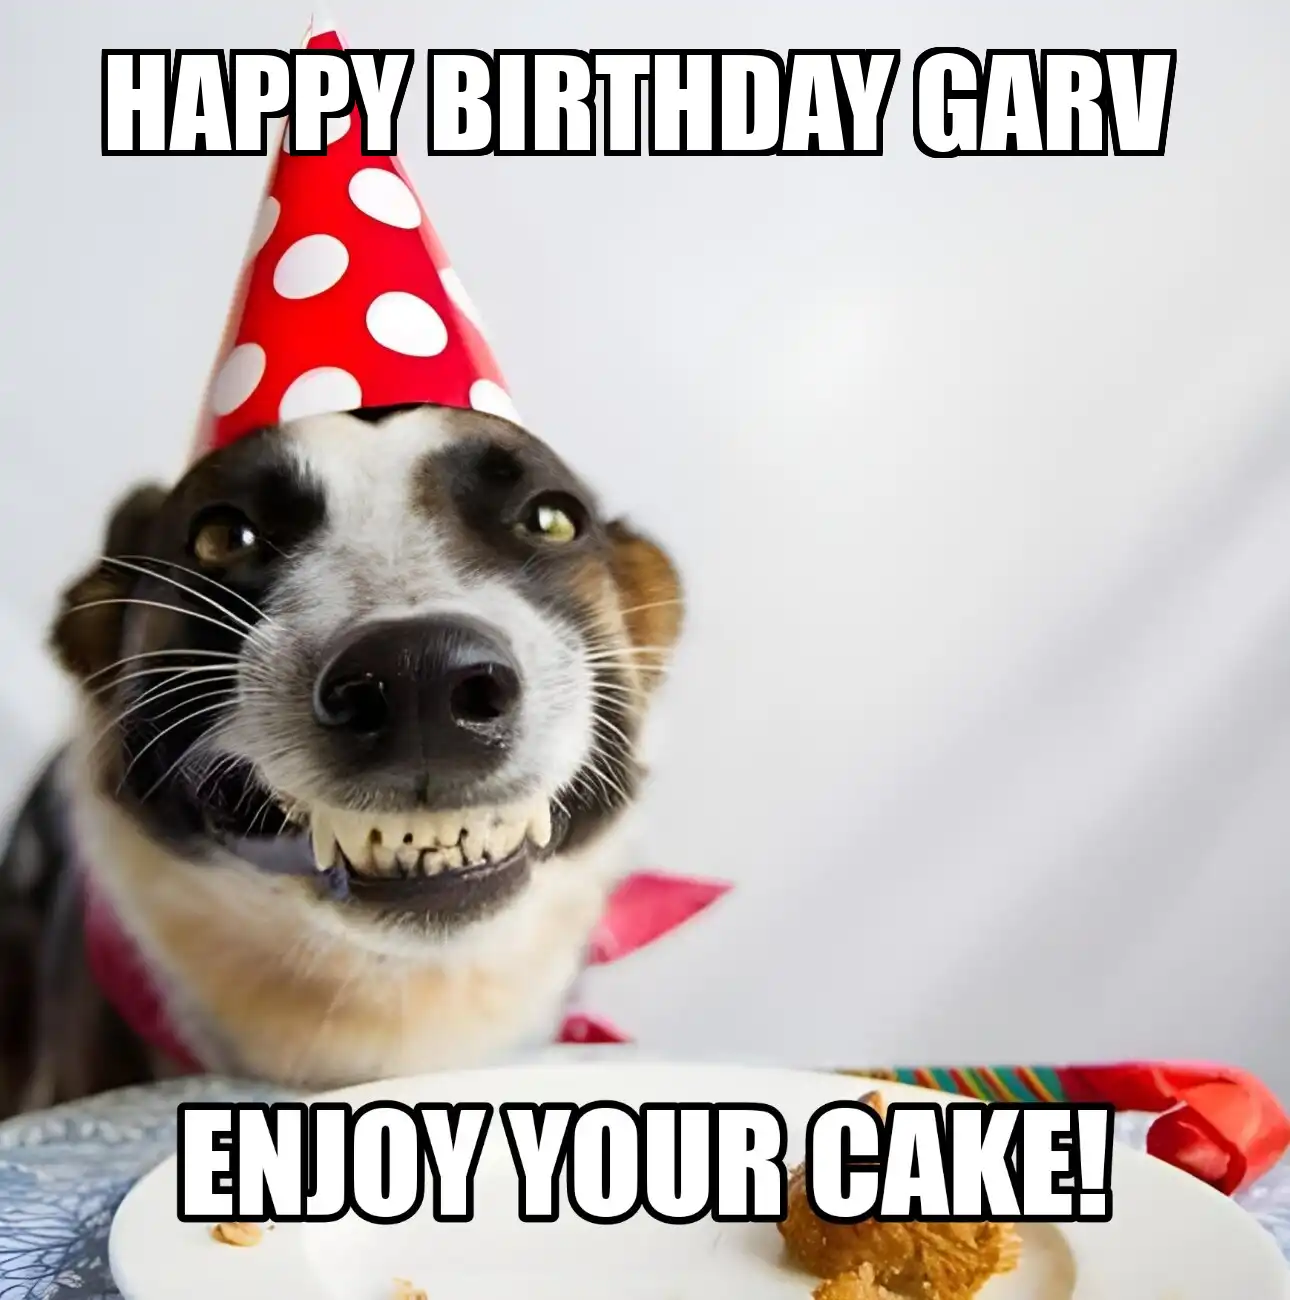 Happy Birthday Garv Enjoy Your Cake Dog Meme